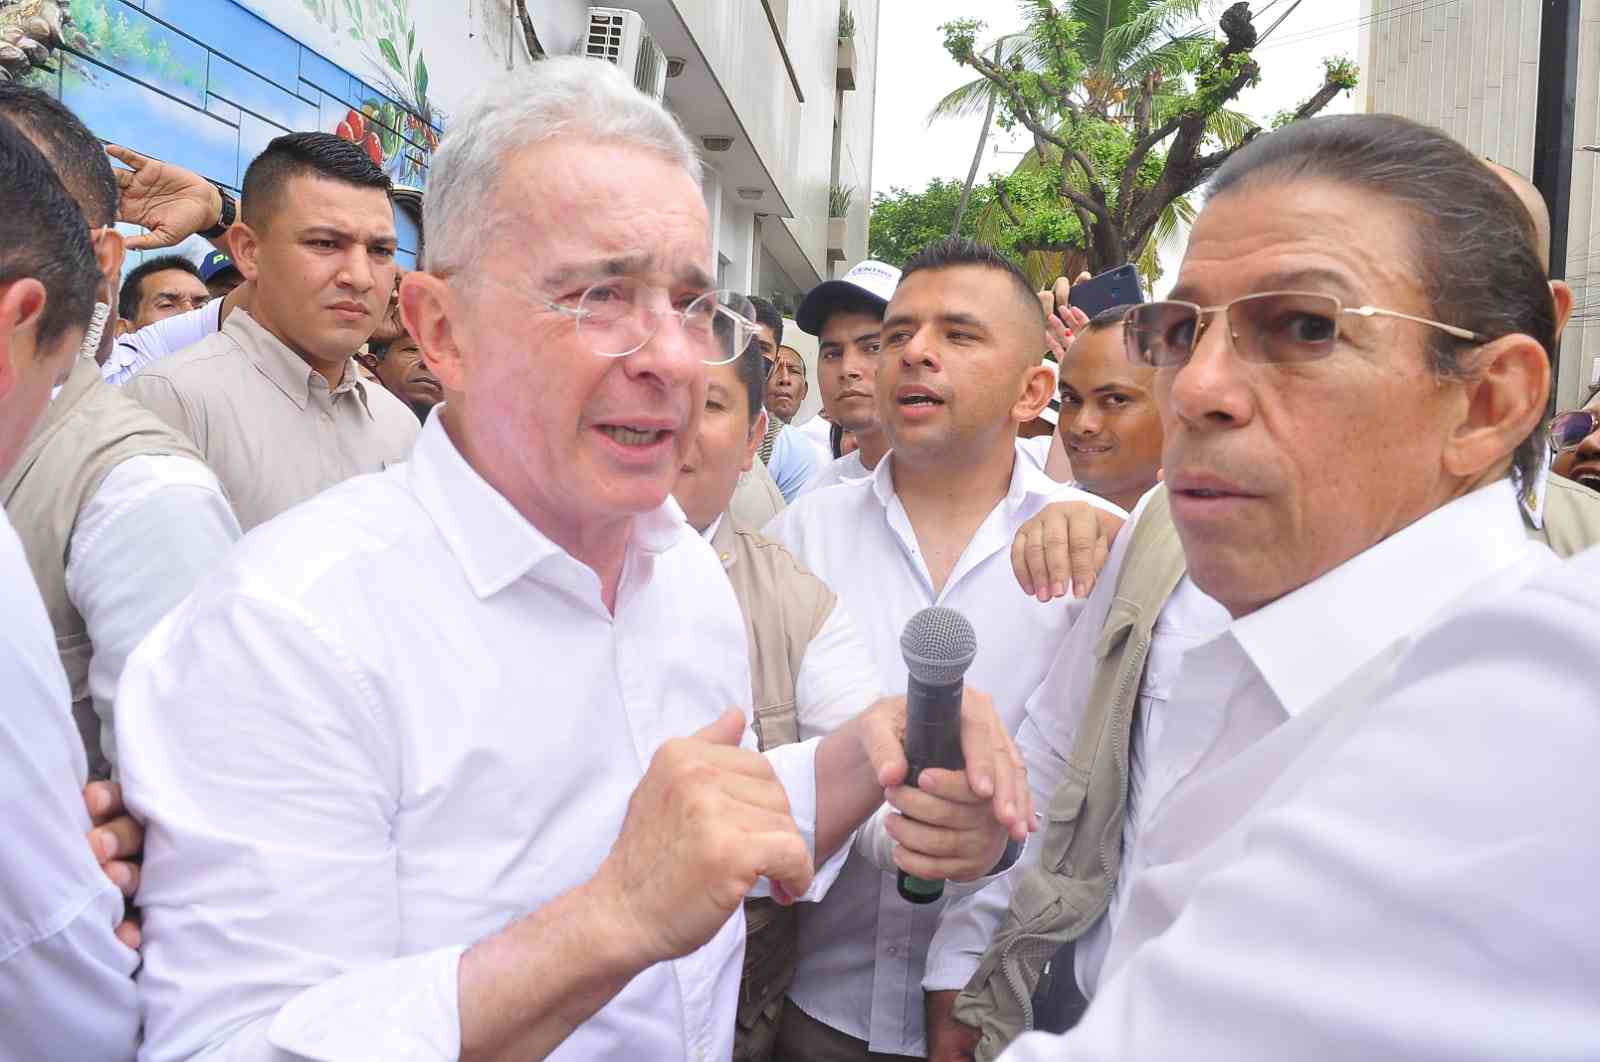 Álvaro Uribe Vélez, este miércoles 10 de mayo, en el centro de Valledupar. / FOTO: JOAQUÍN RAMÍREZ.

